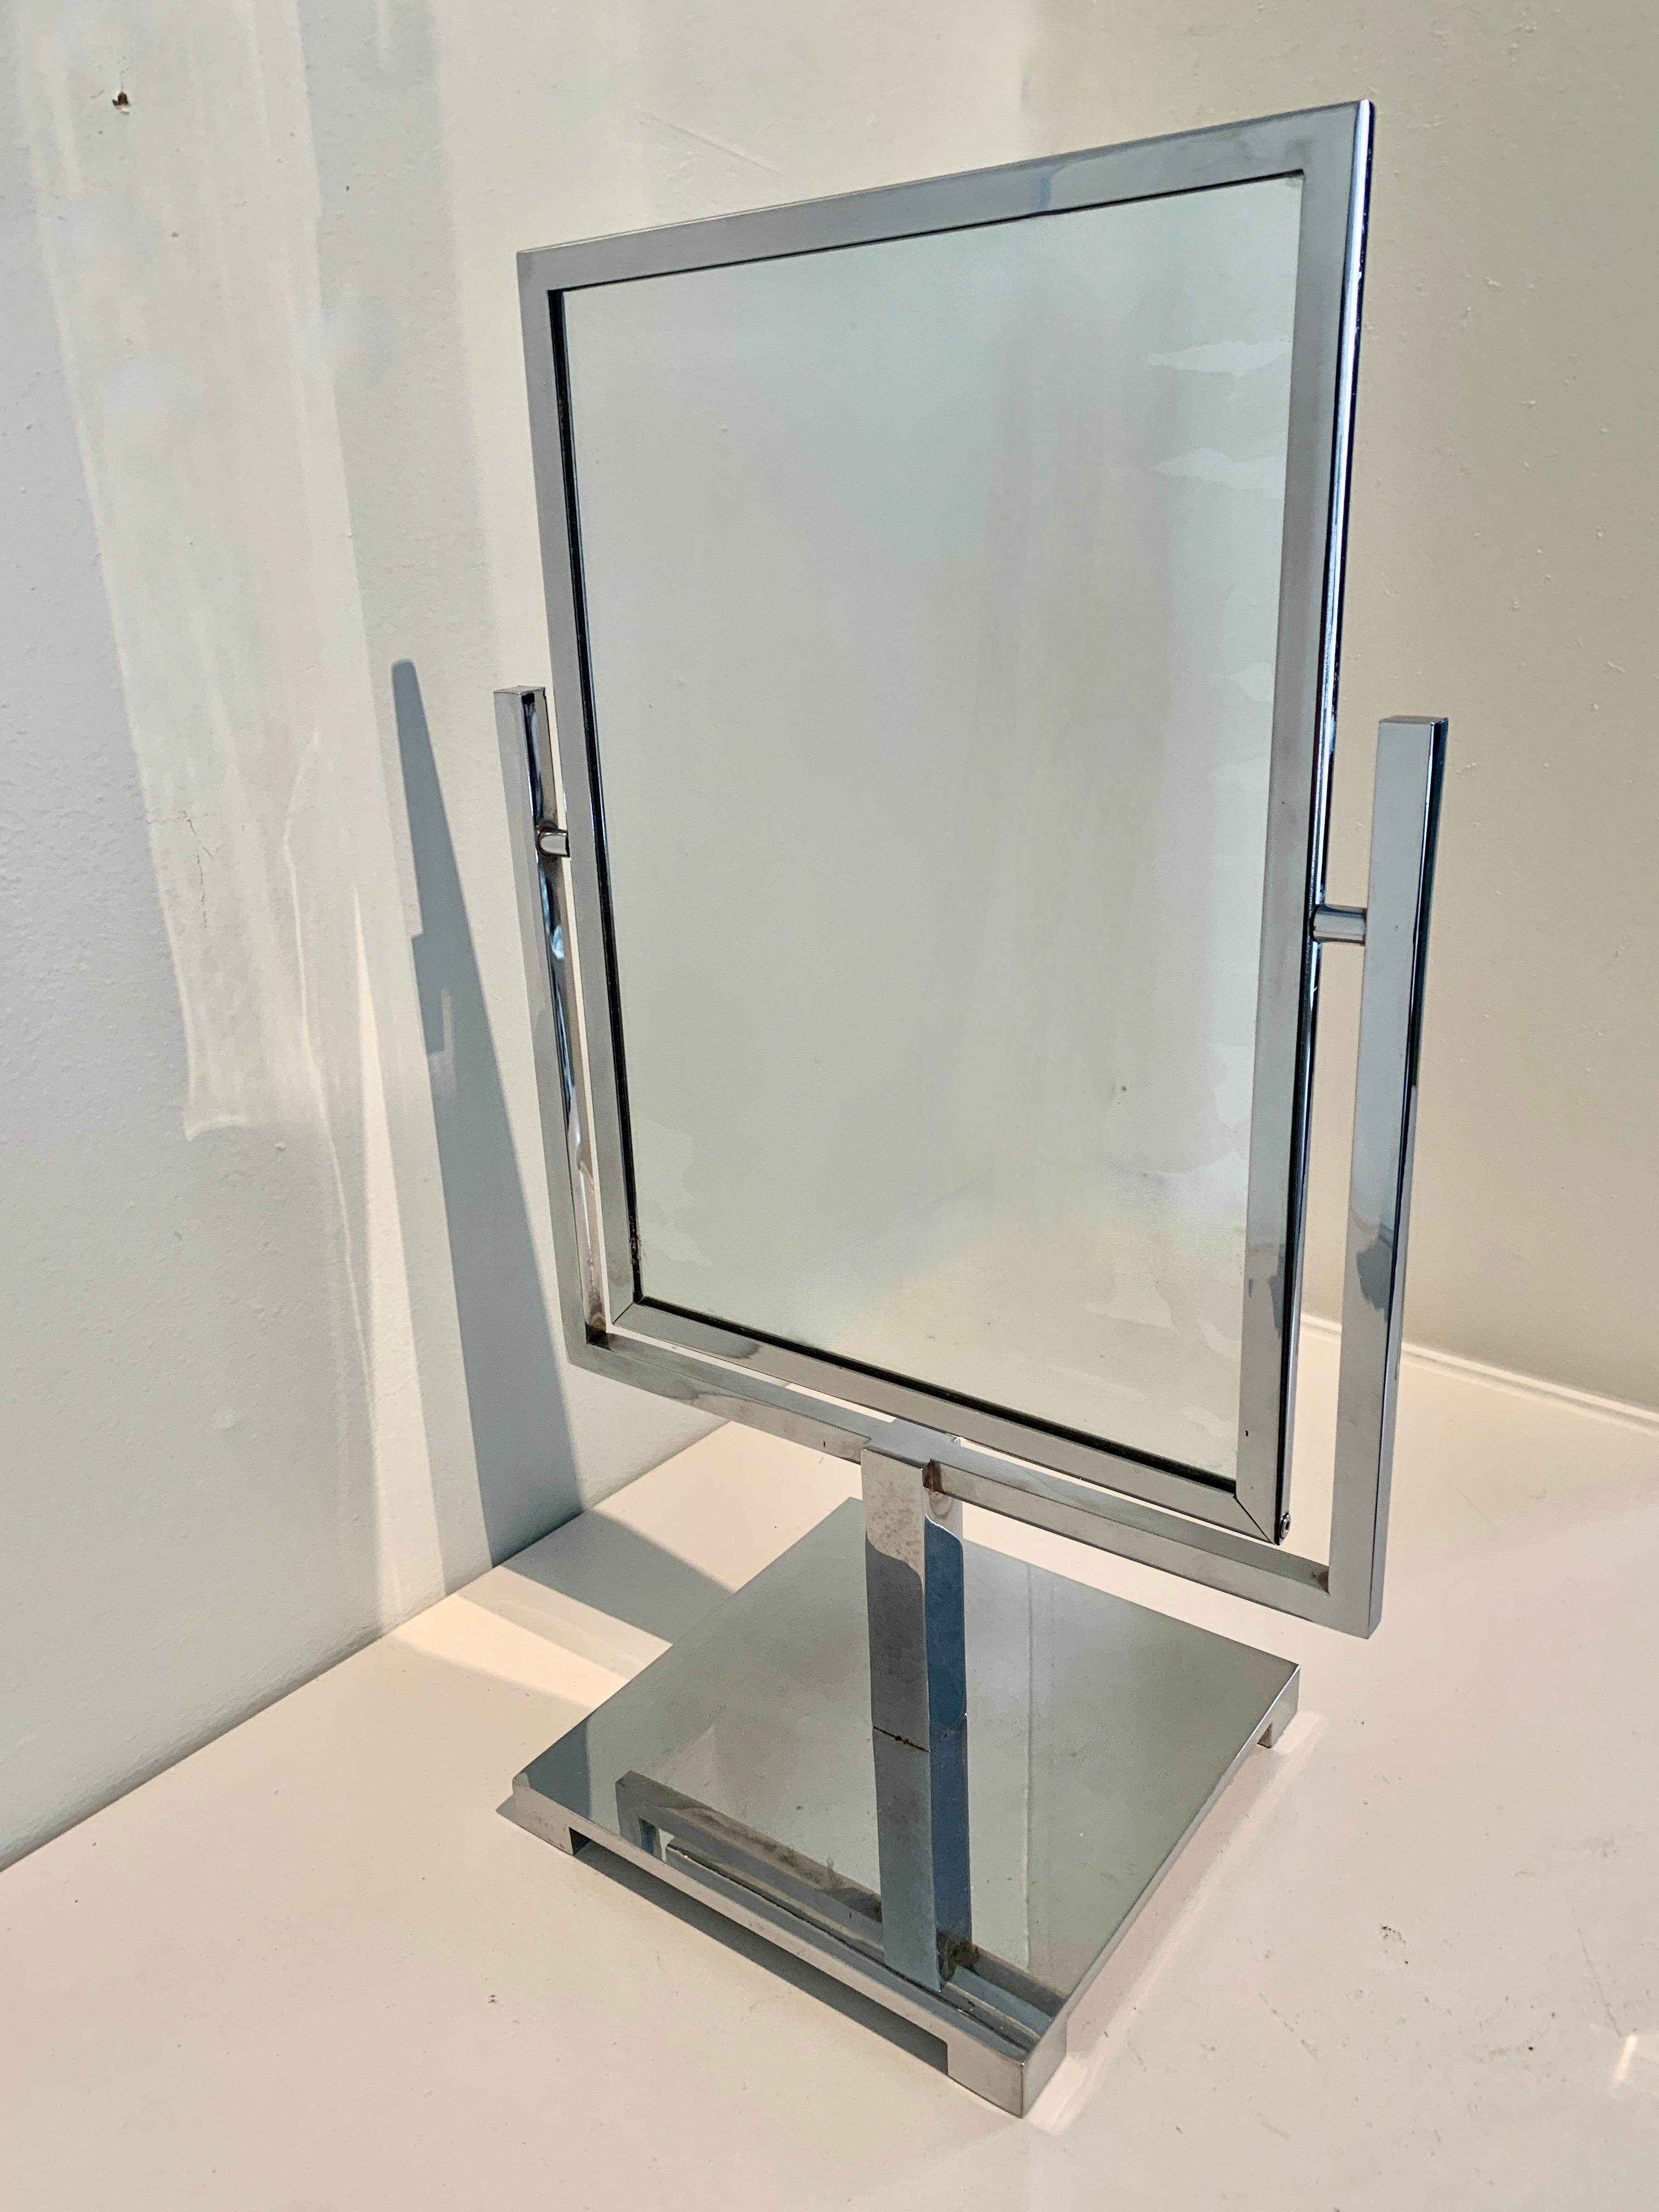 Ein wunderbarer architektonischer Spiegel. Der Spiegel ist doppelseitig mit normaler Reflexion (keine Vergrößerung) auf beiden Seiten. Der Spiegel ist in einen Rahmen aus poliertem Chrom eingefasst und steht auf einem Ständer aus demselben Material